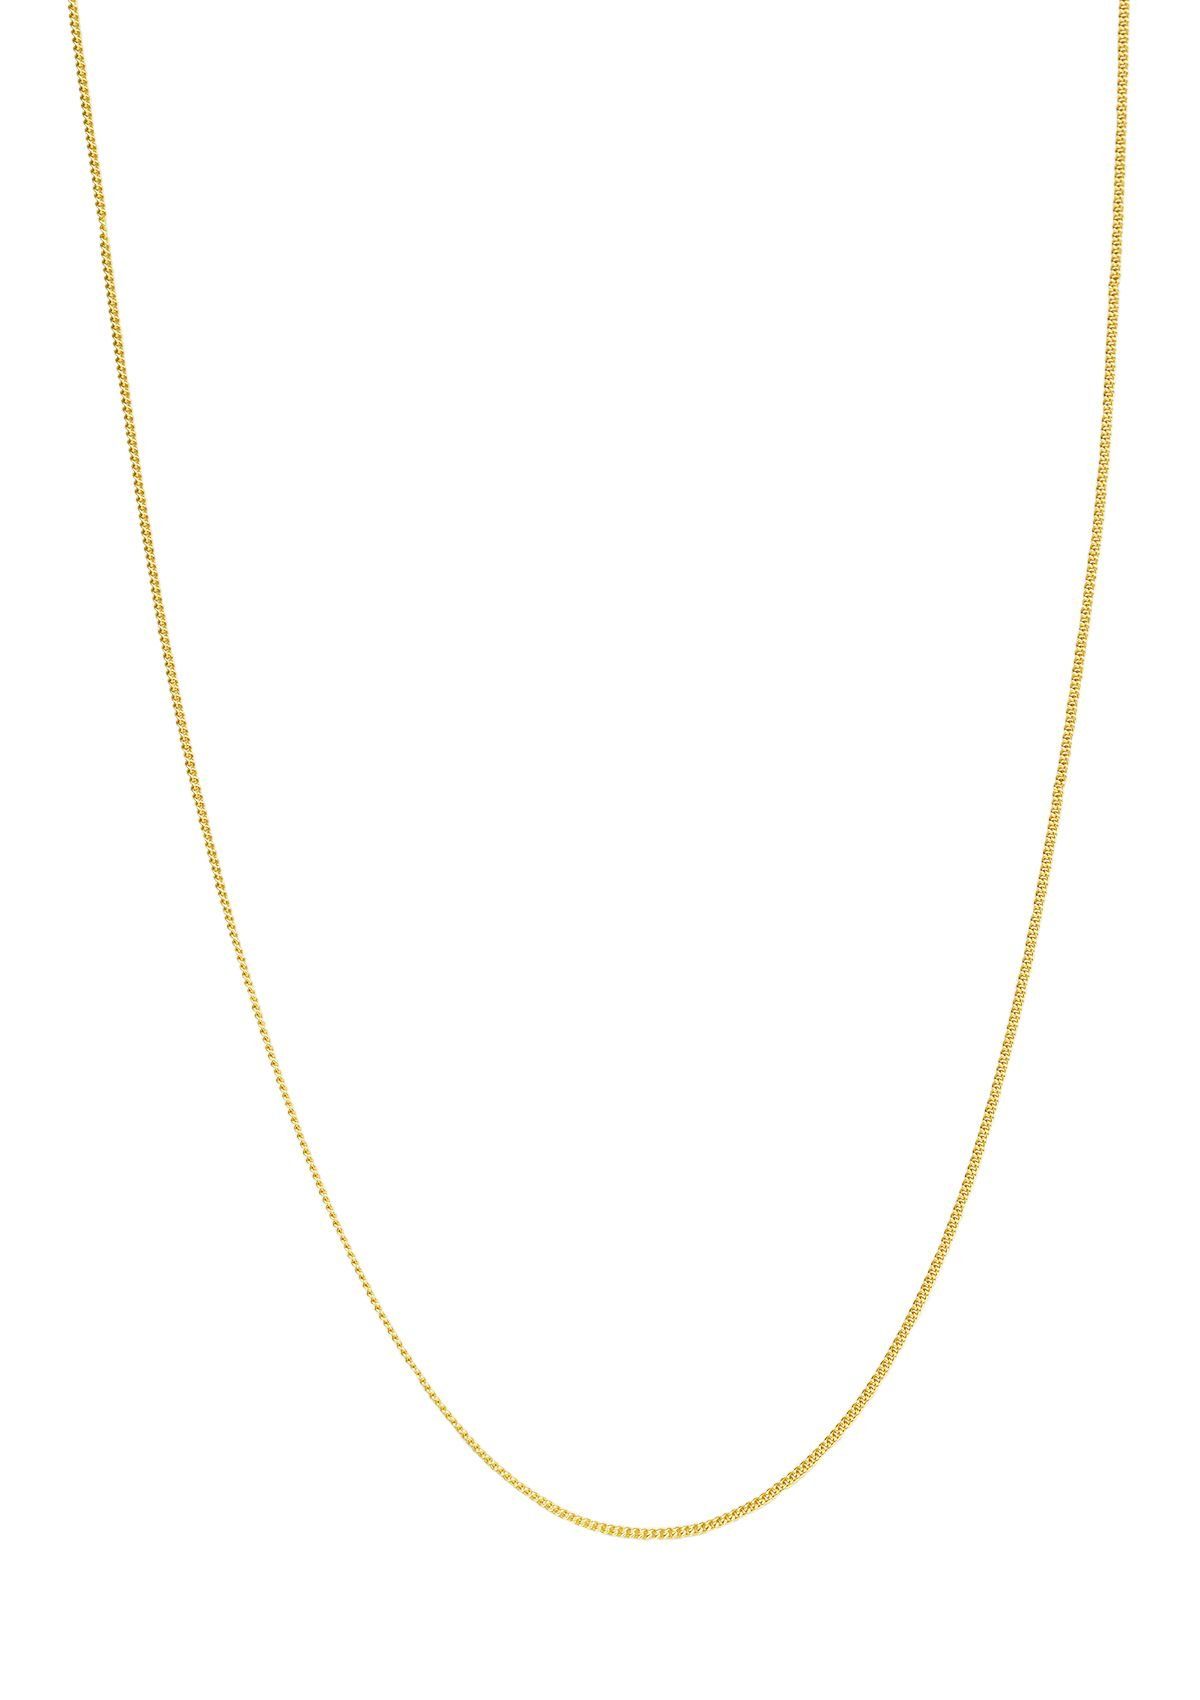 Hey Happiness Silber fein Vergoldet Halskette Look 18K, Layer strukturiert Damen zum Silberkette Kombinieren, hypoallergen 925